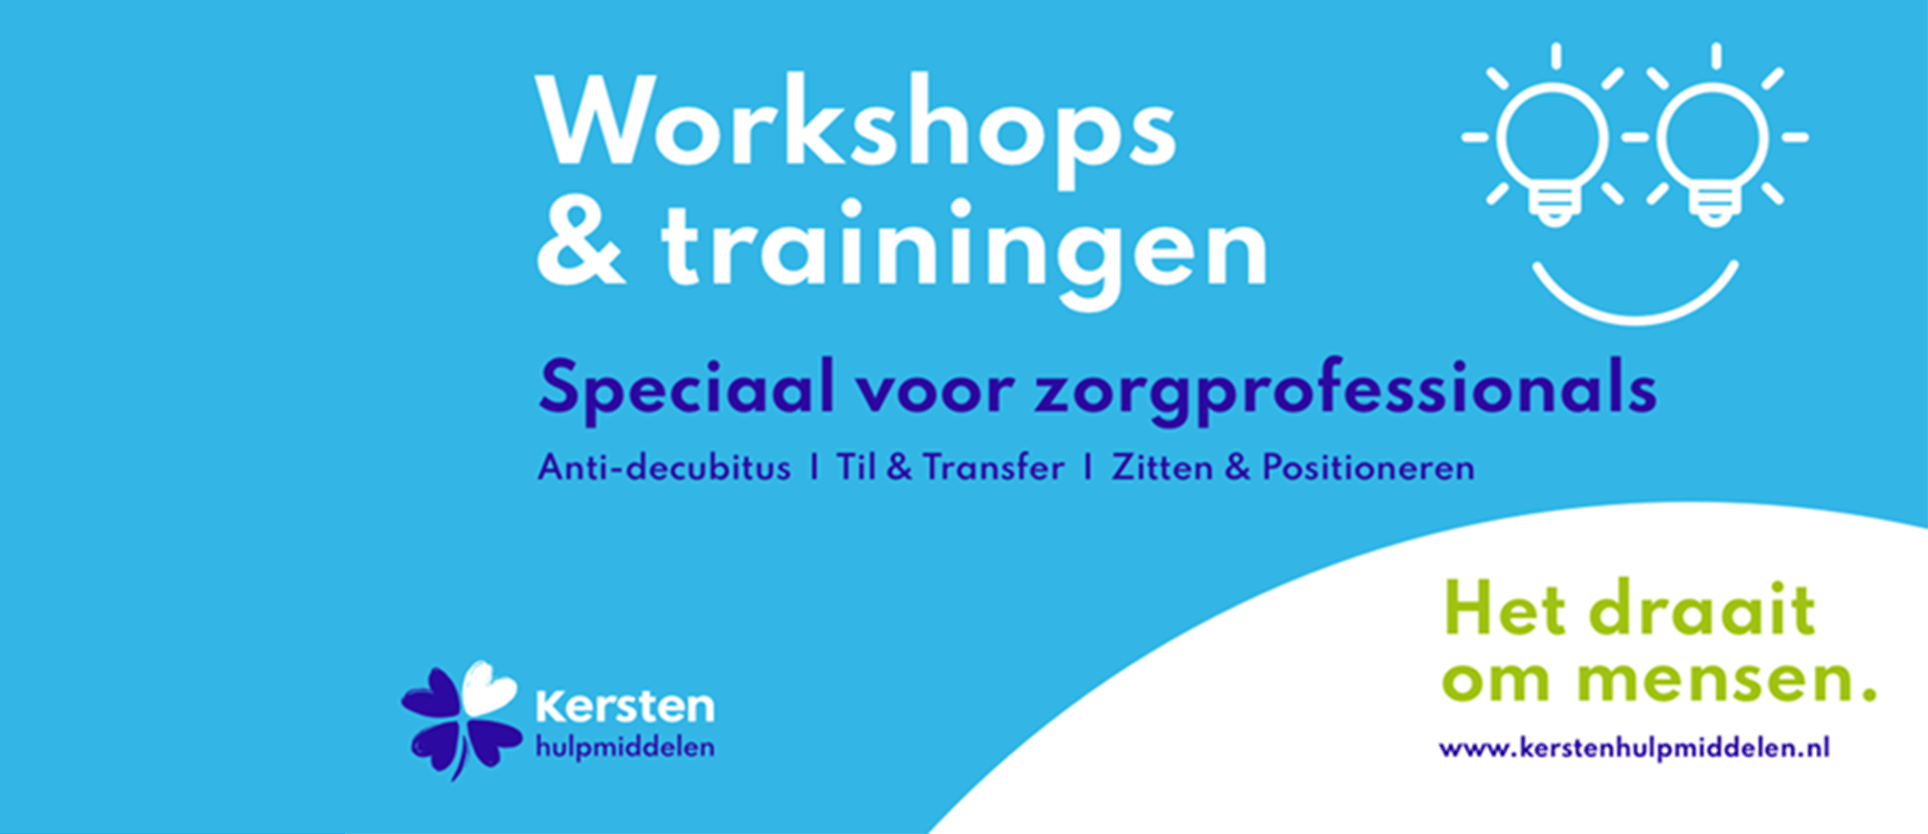 Trainingen & workshops